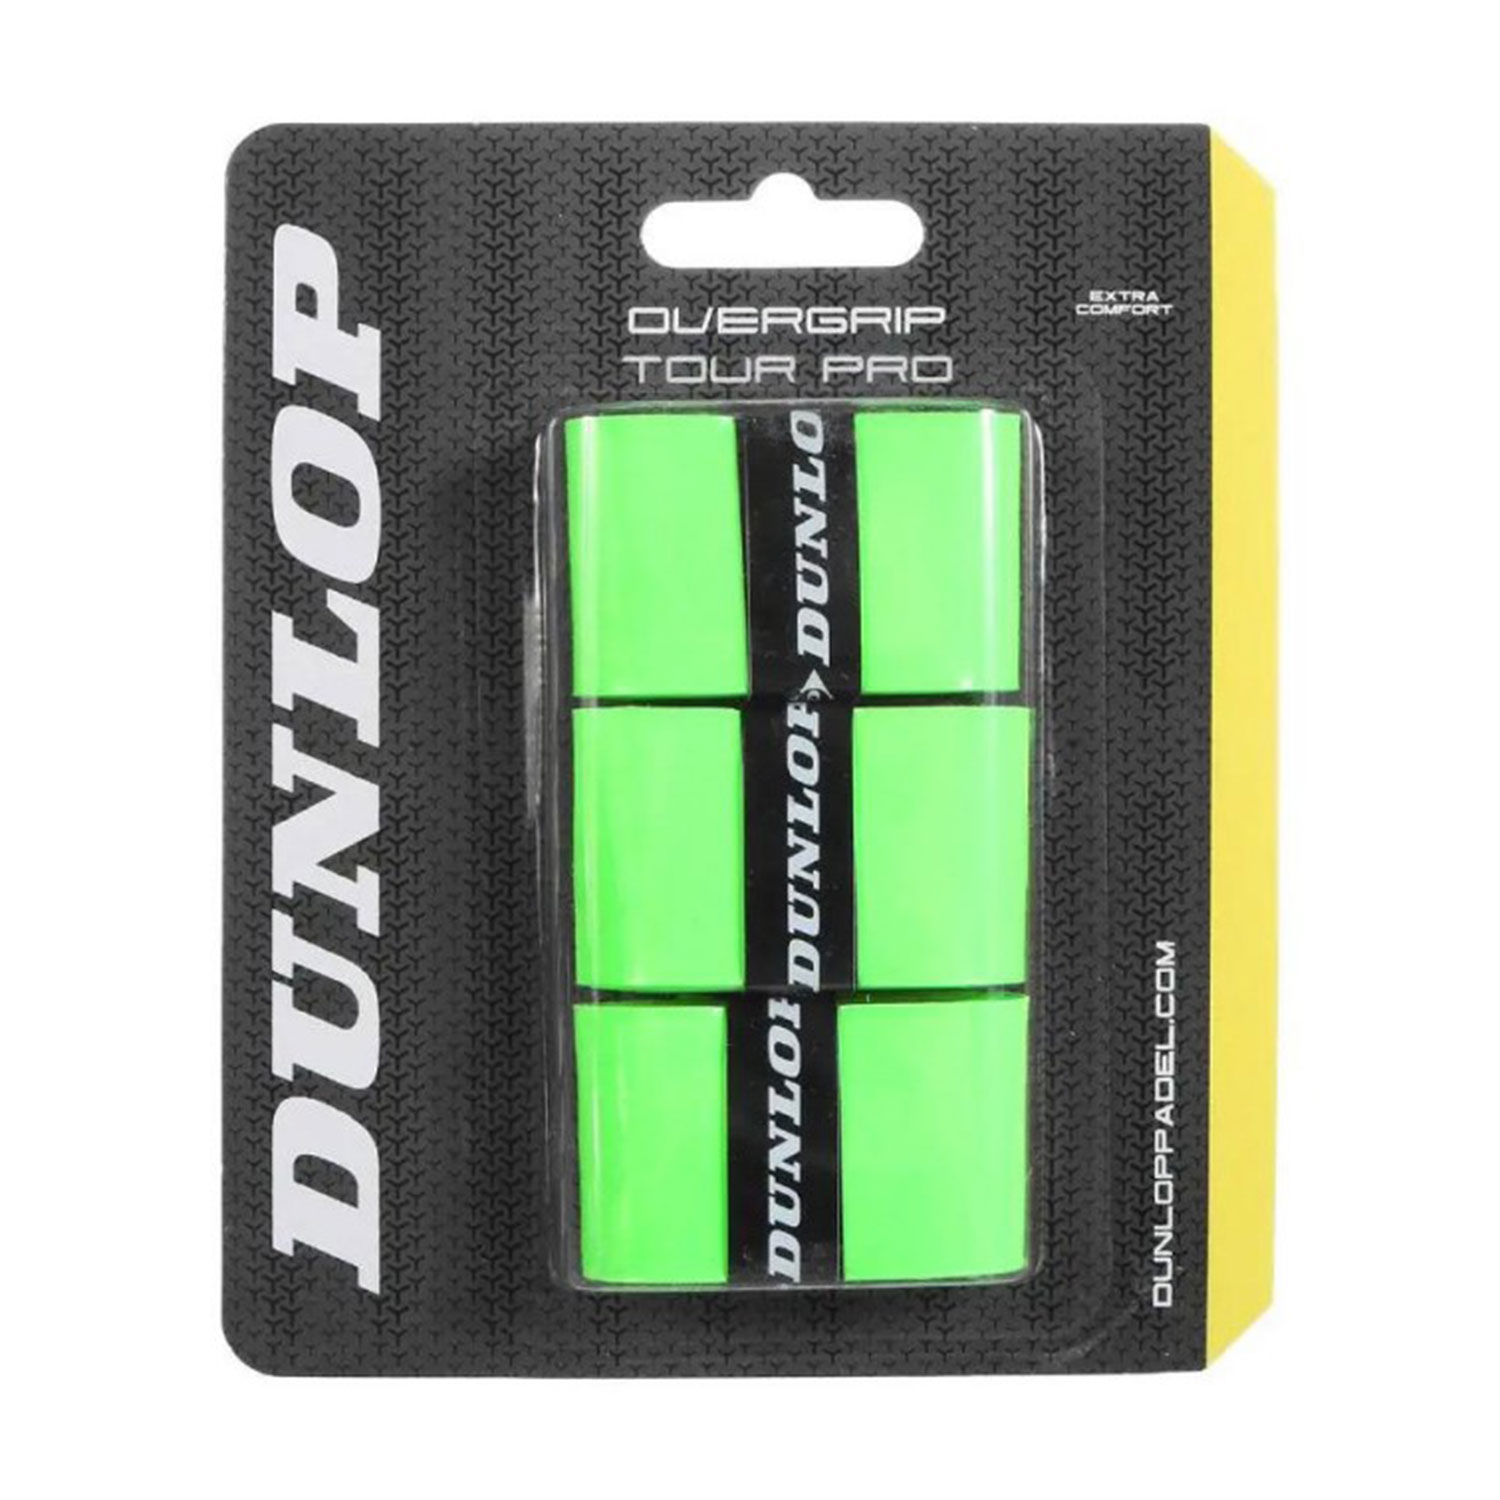 Dunlop Tour Pro x 3 Sobregrip - Green